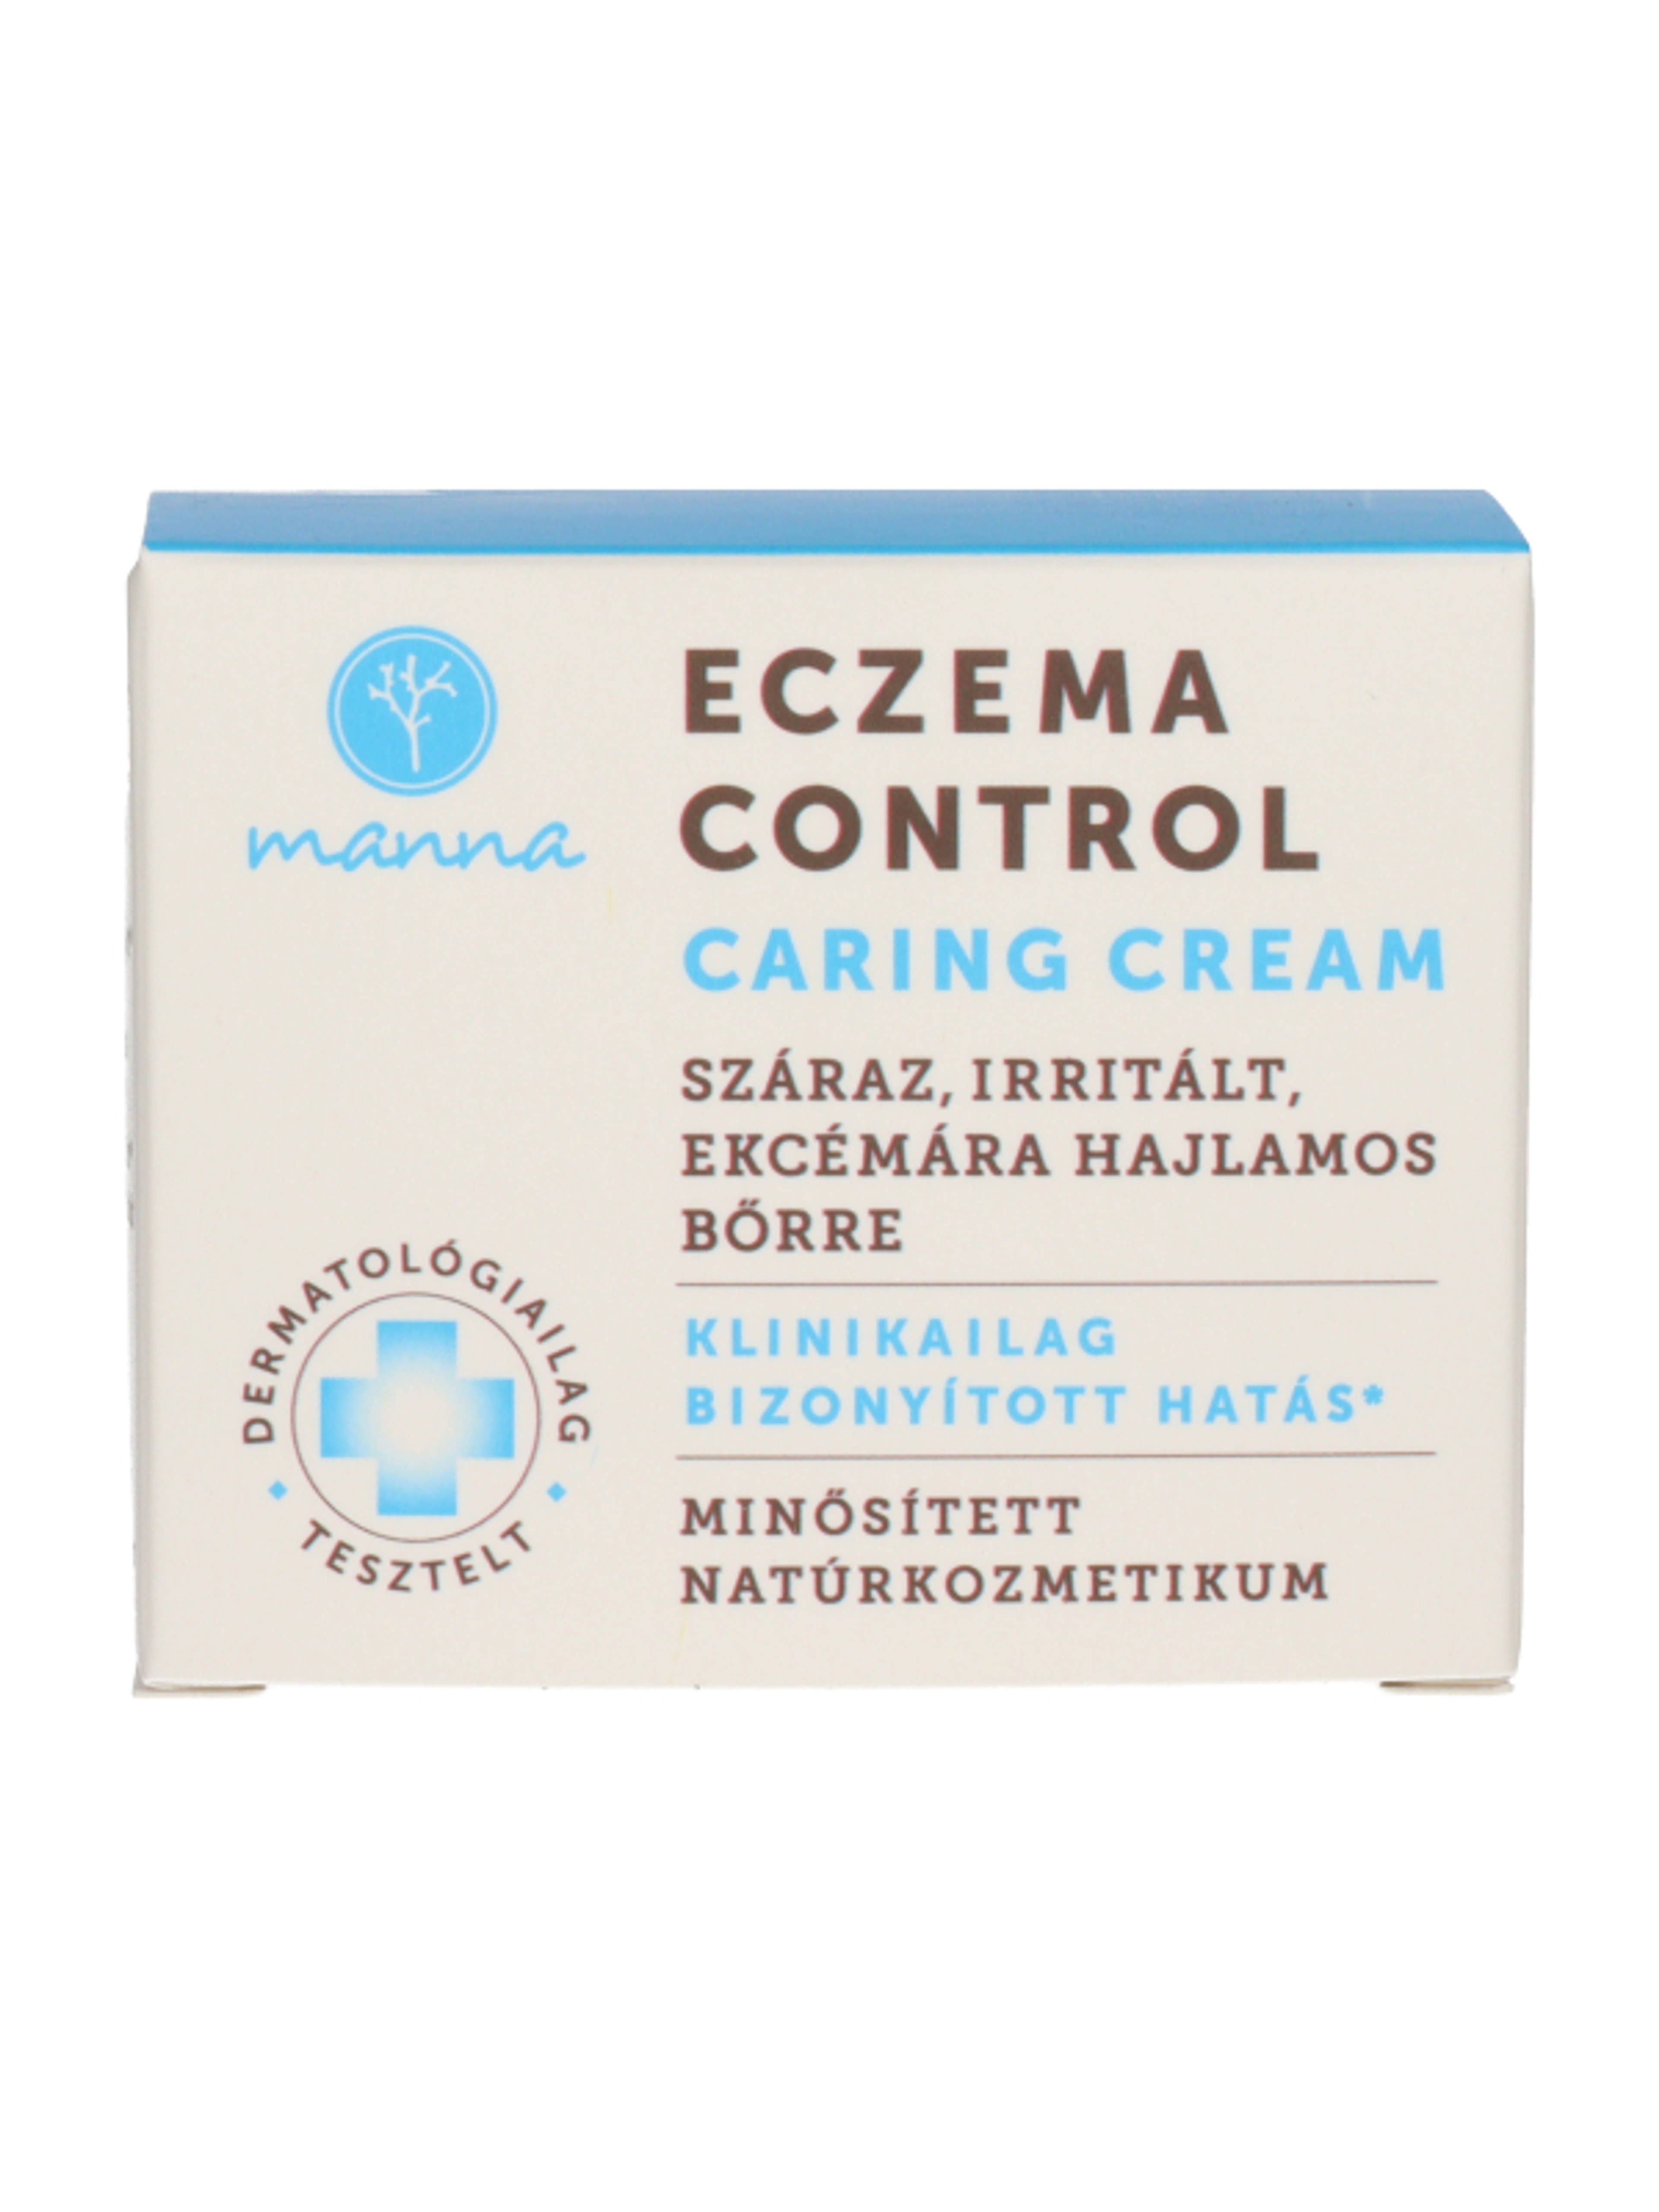 Manna Eczema Control Caring krém száraz és ekcémára hajlamos bőrre - 100 ml